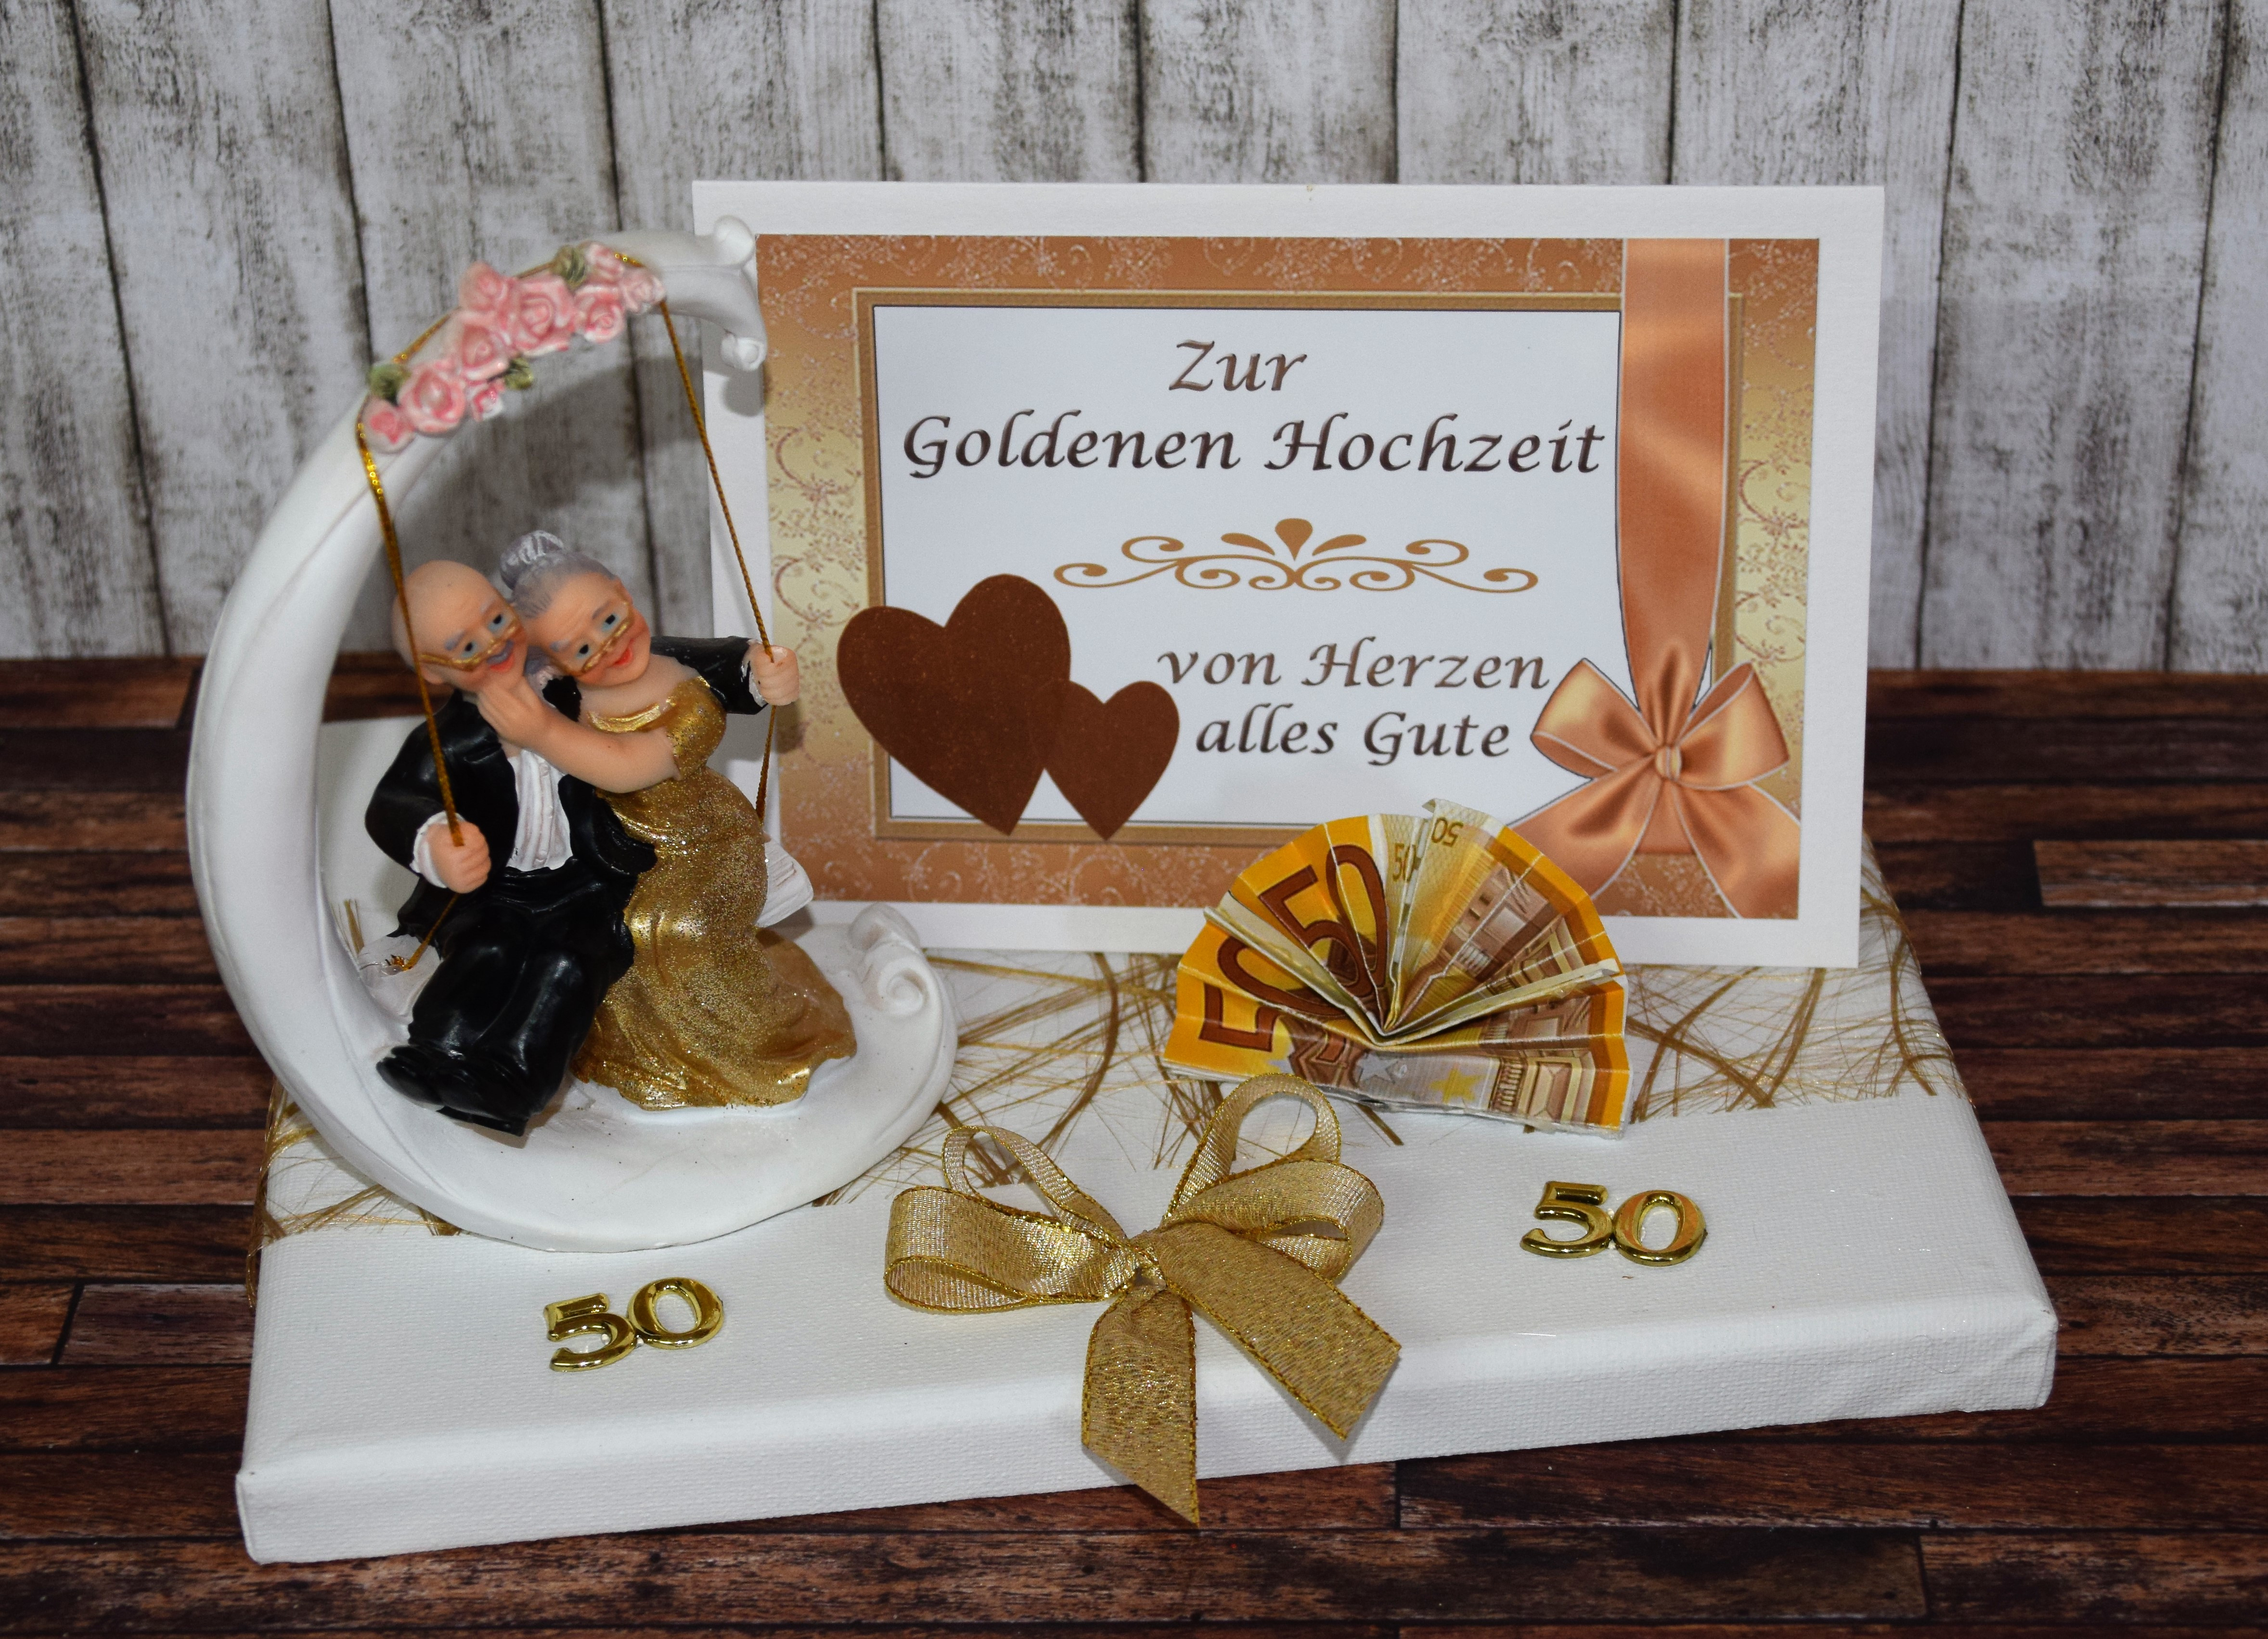 Goldene Hochzeit Geschenk
 Geld Geschenk zur goldenen Hochzeit mit Goldpaar auf Schaukel